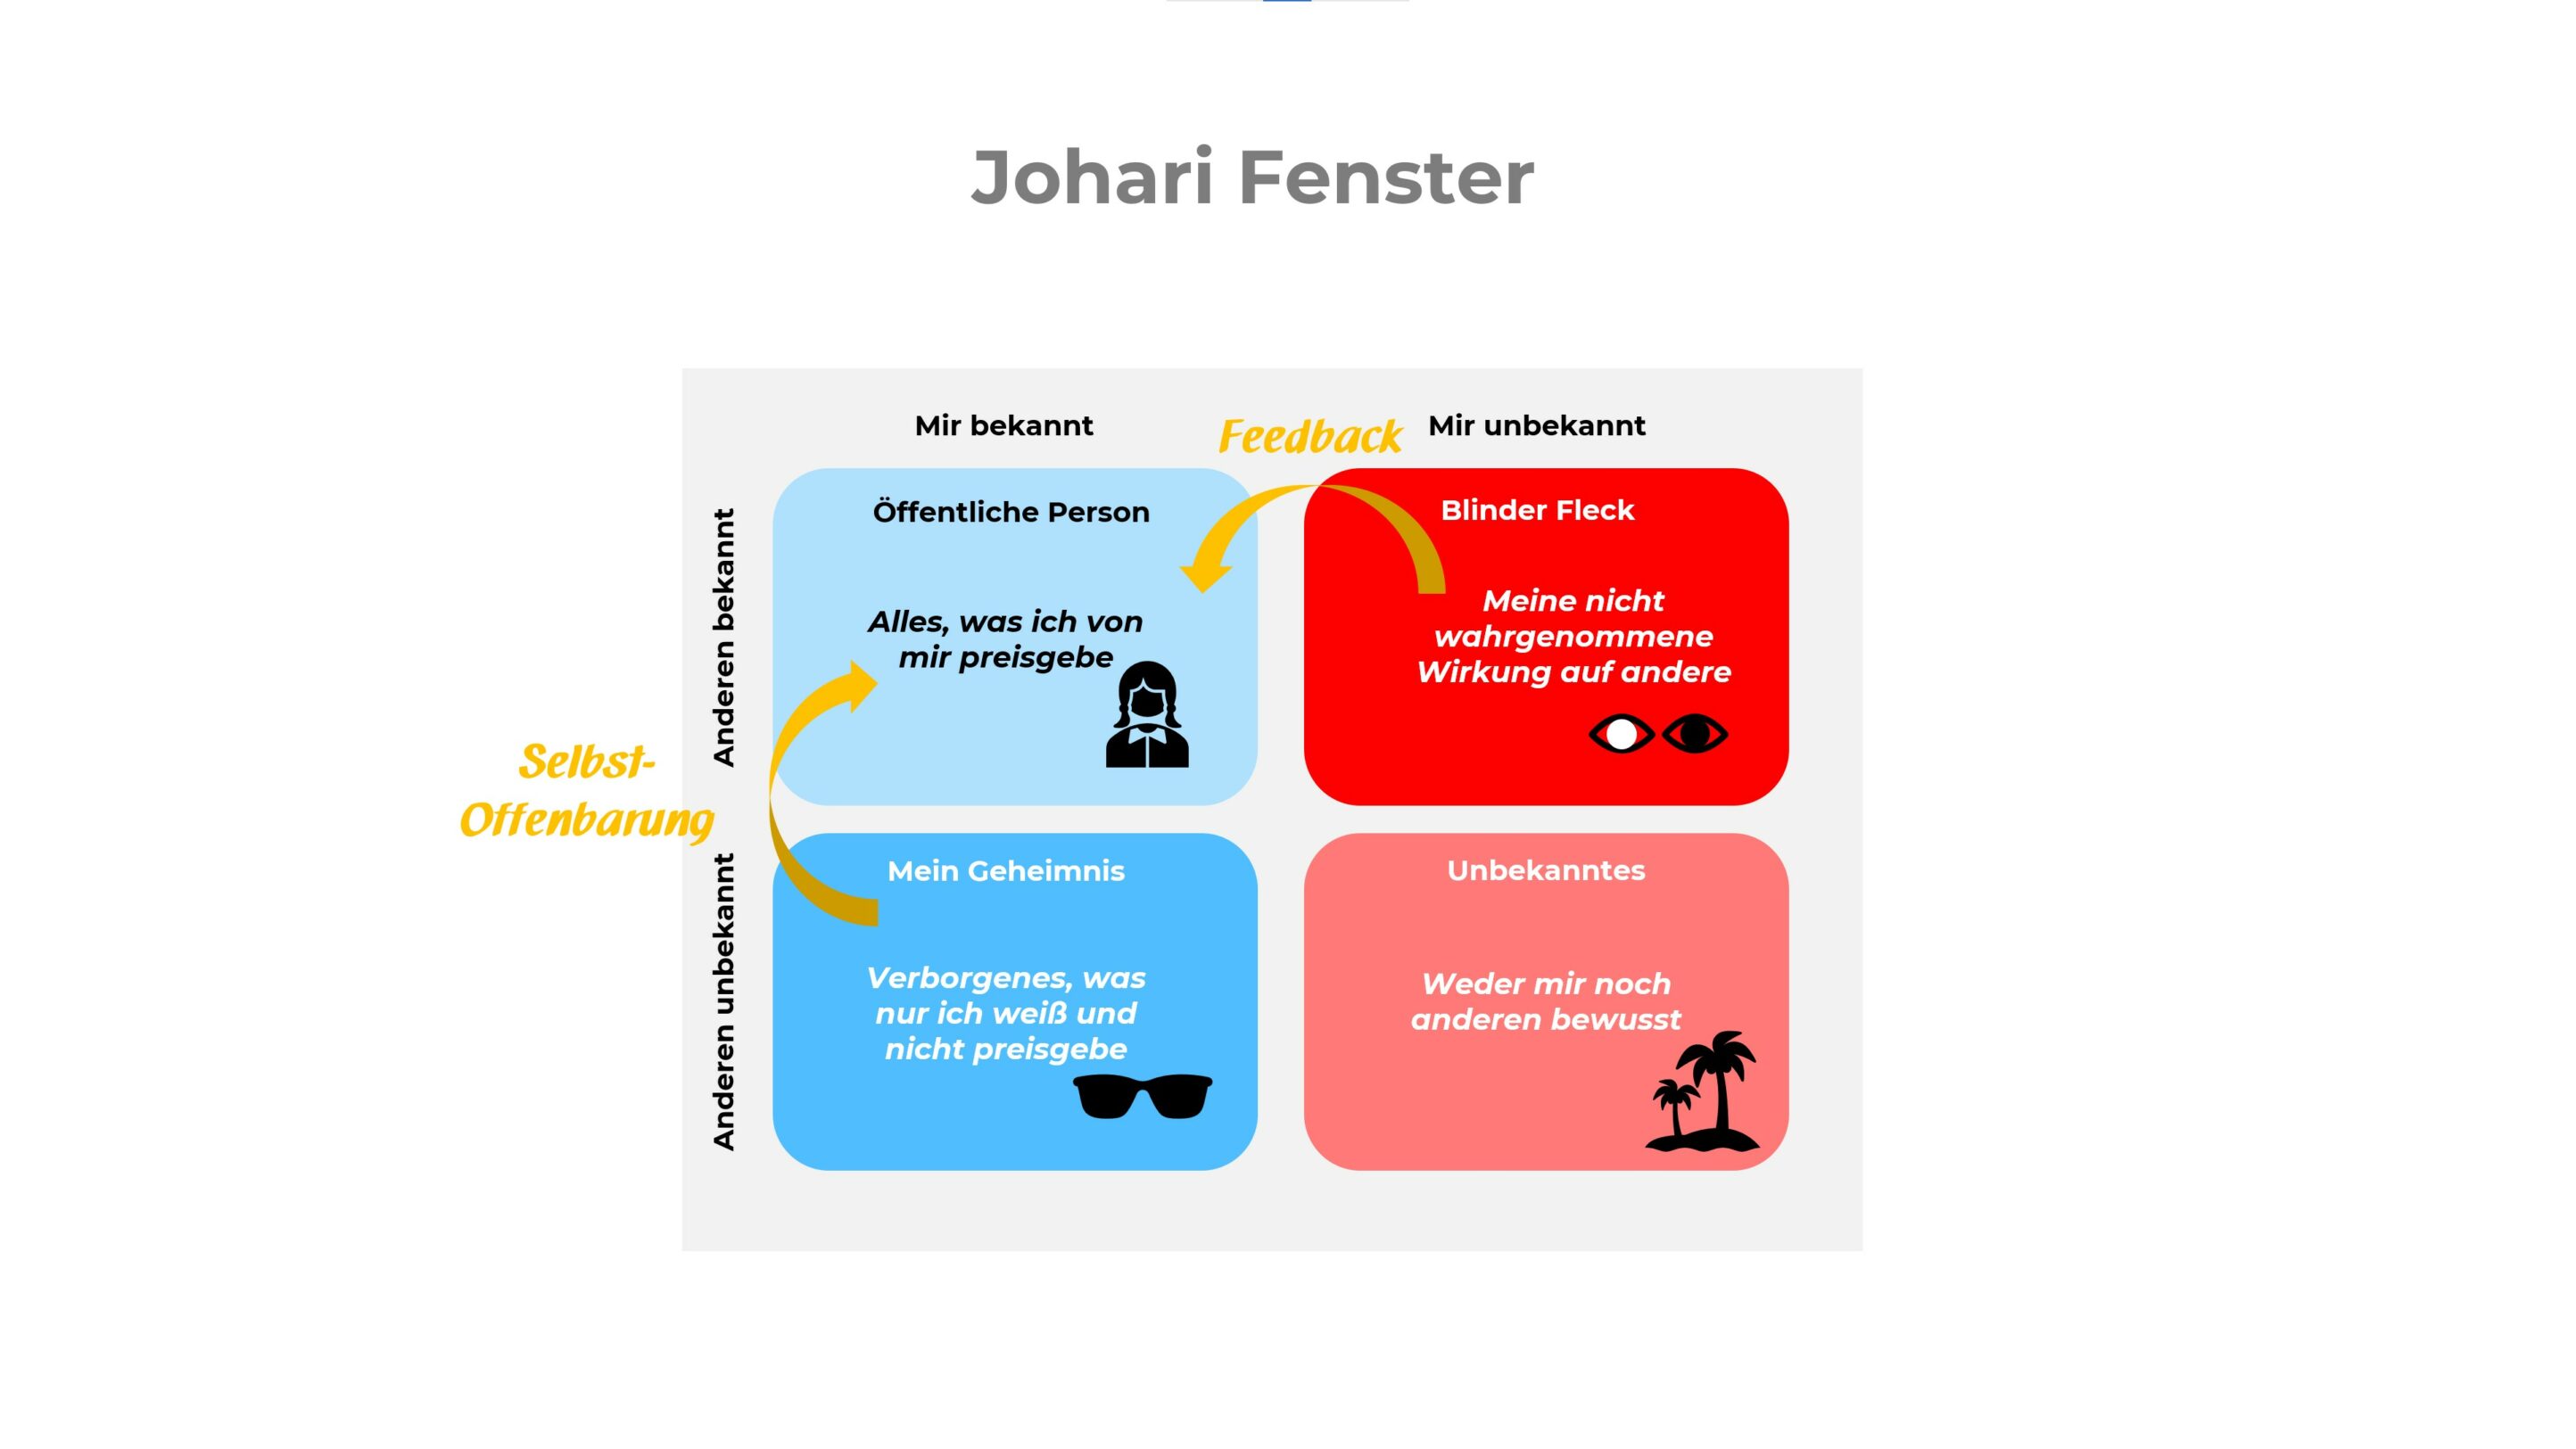 Johari-Fenster - Visualisierung von Selbst- und Fremdwahrnehmung